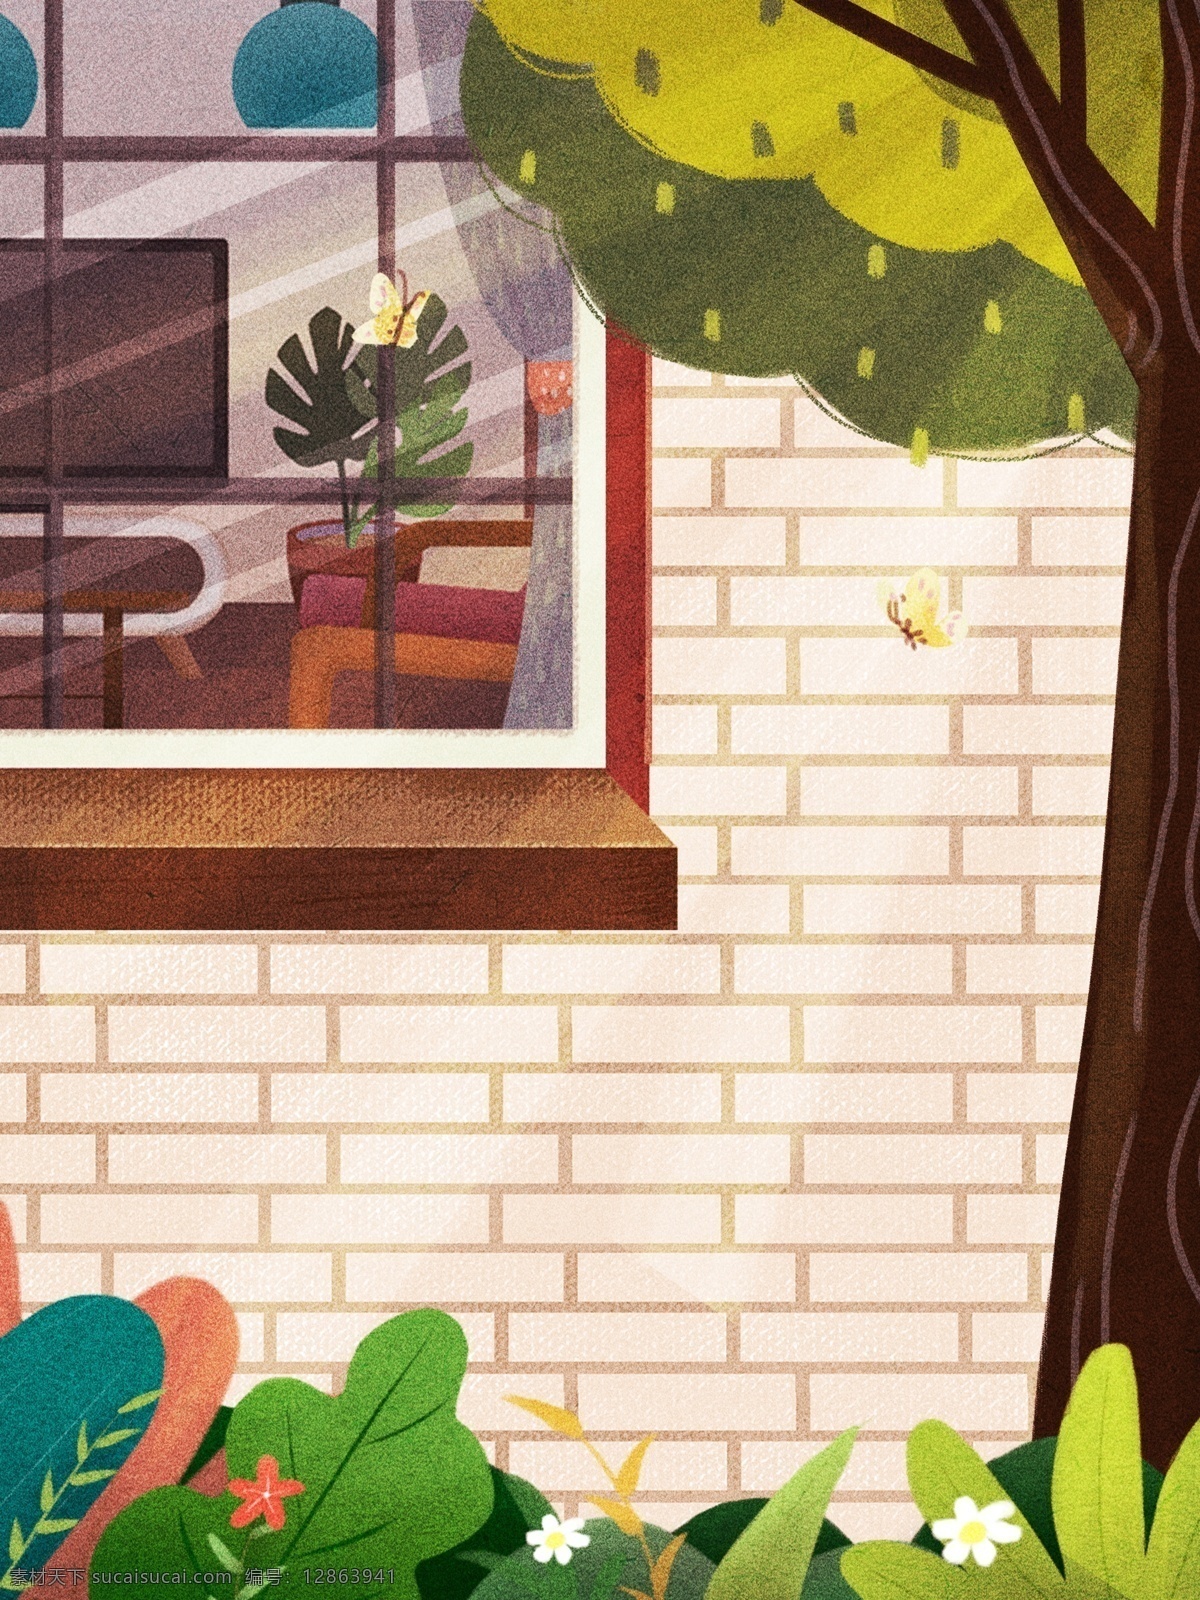 卡通 居家 客厅 窗外 风景 插画 背景 温馨背景 居家生活插画 生活插画背景 窗户 窗帘 大树背景 植物背景